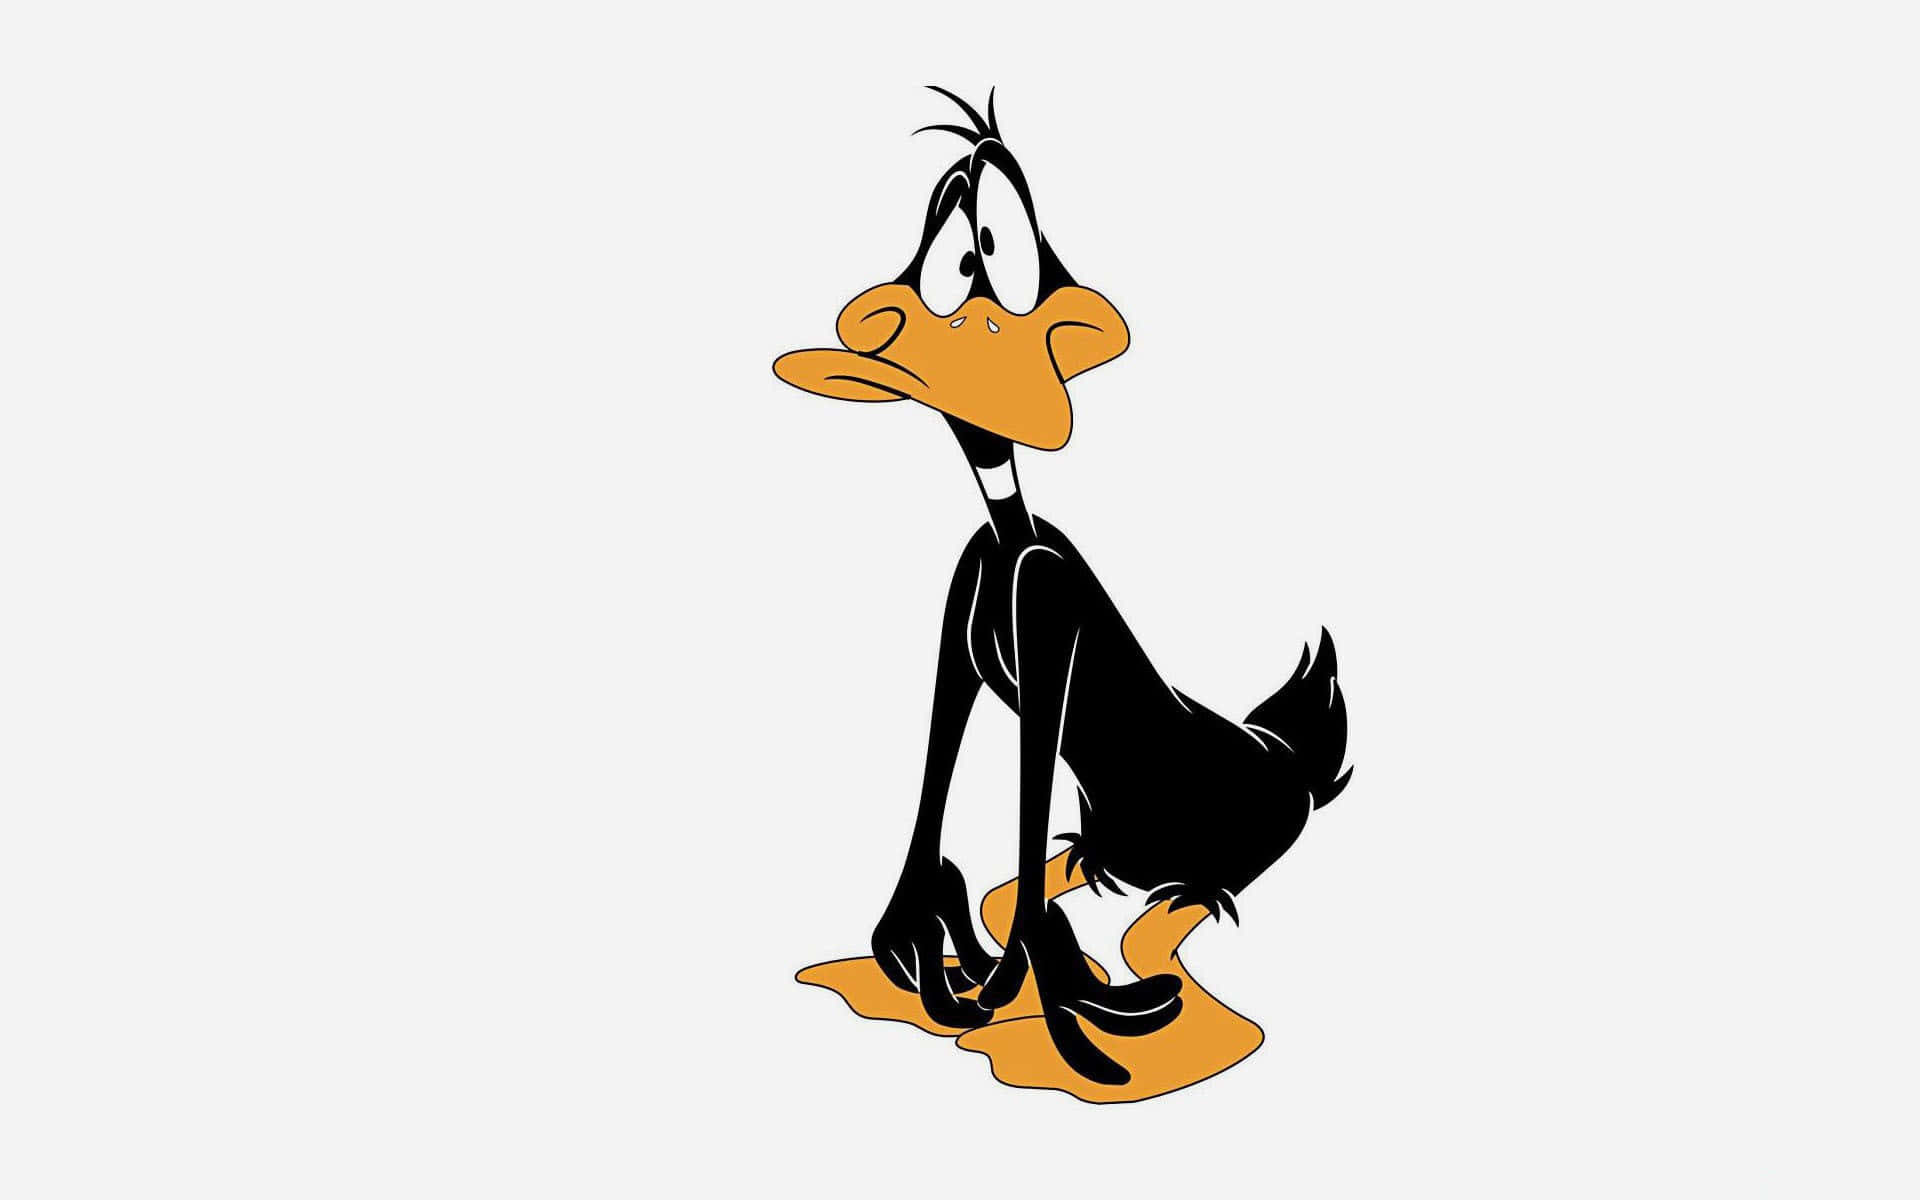 Sfondosemplice Con Il Personaggio Dei Cartoni Animati Looney Tunes Daffy Duck